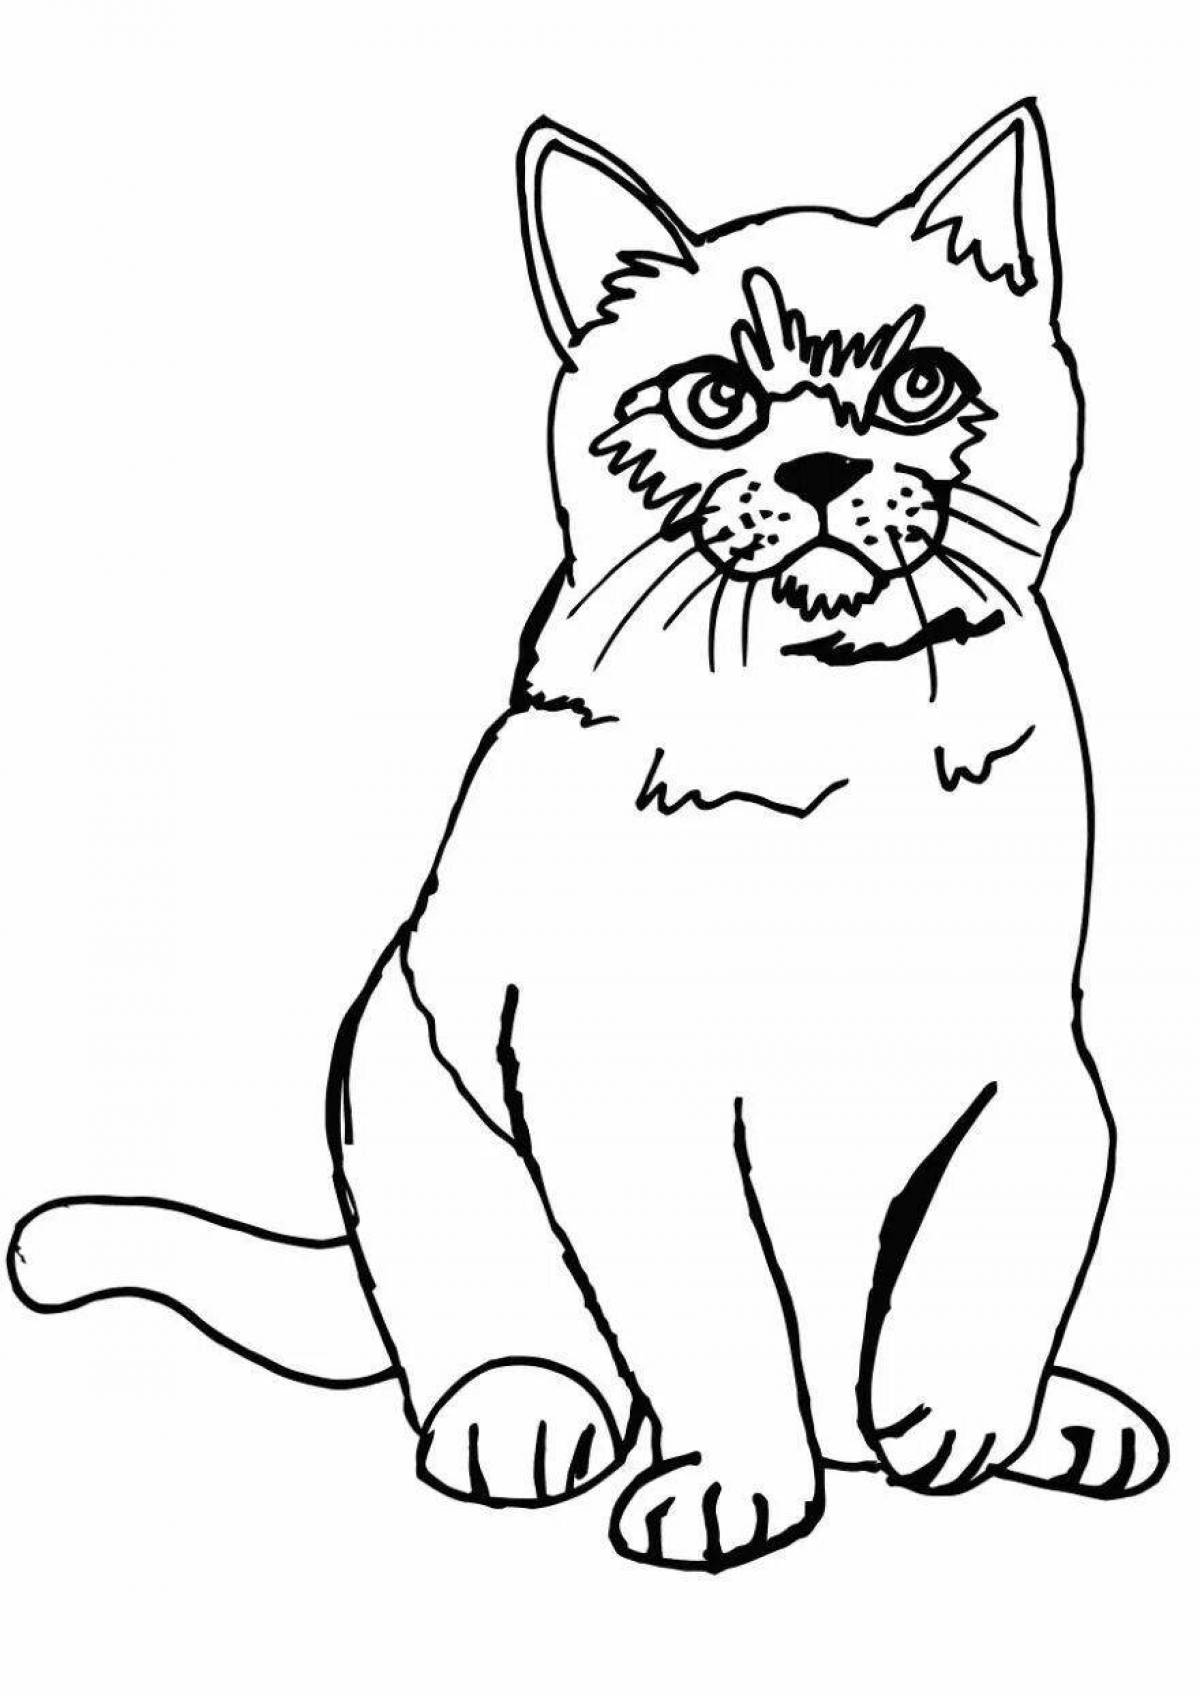 Причудливая черно-белая раскраска кота